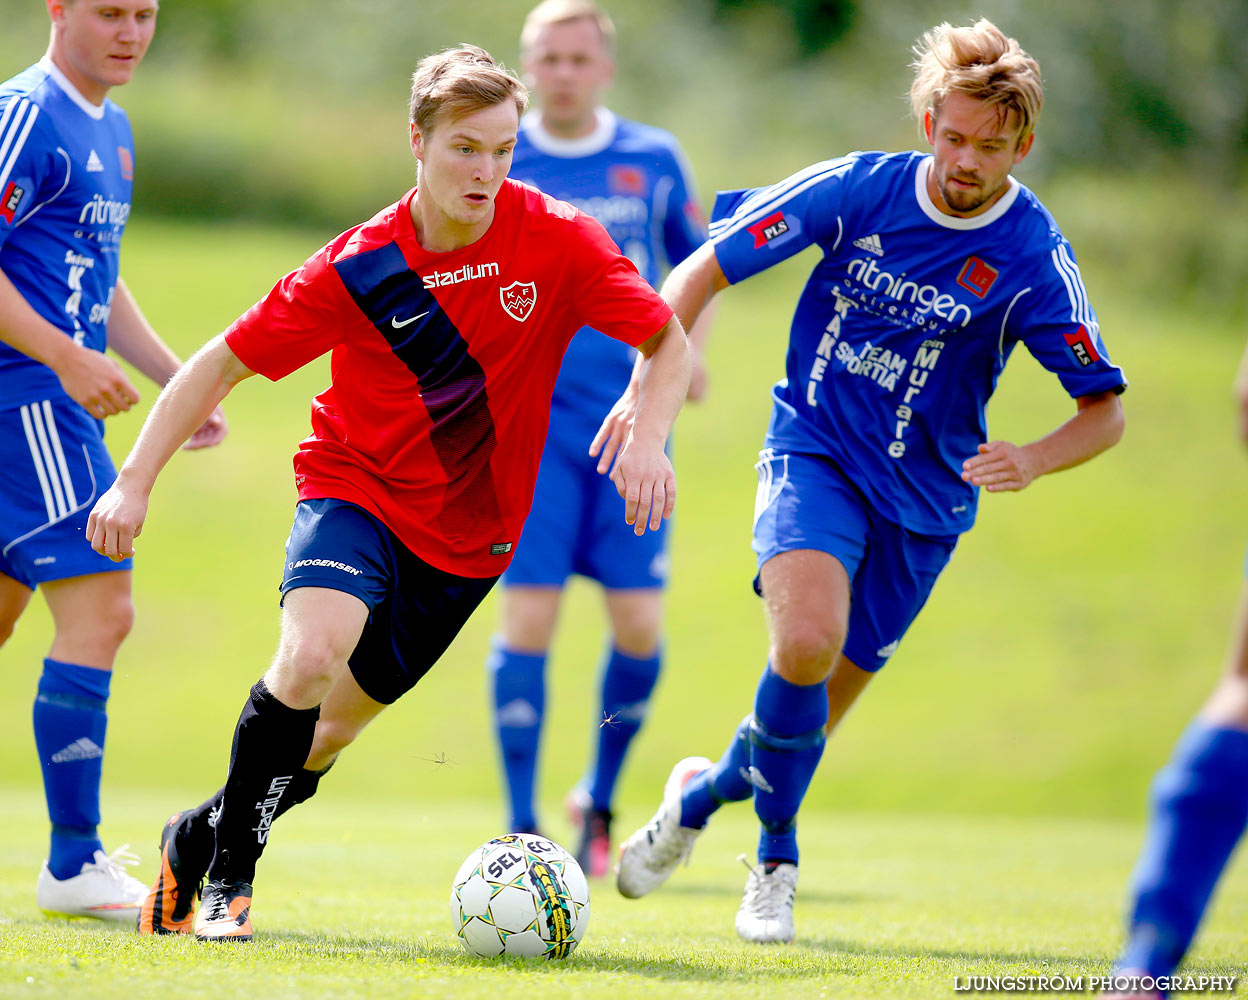 Lerdala IF-Korsberga IF 1-7,herr,Lerdala IP,Lerdala,Sverige,Fotboll,,2015,122978